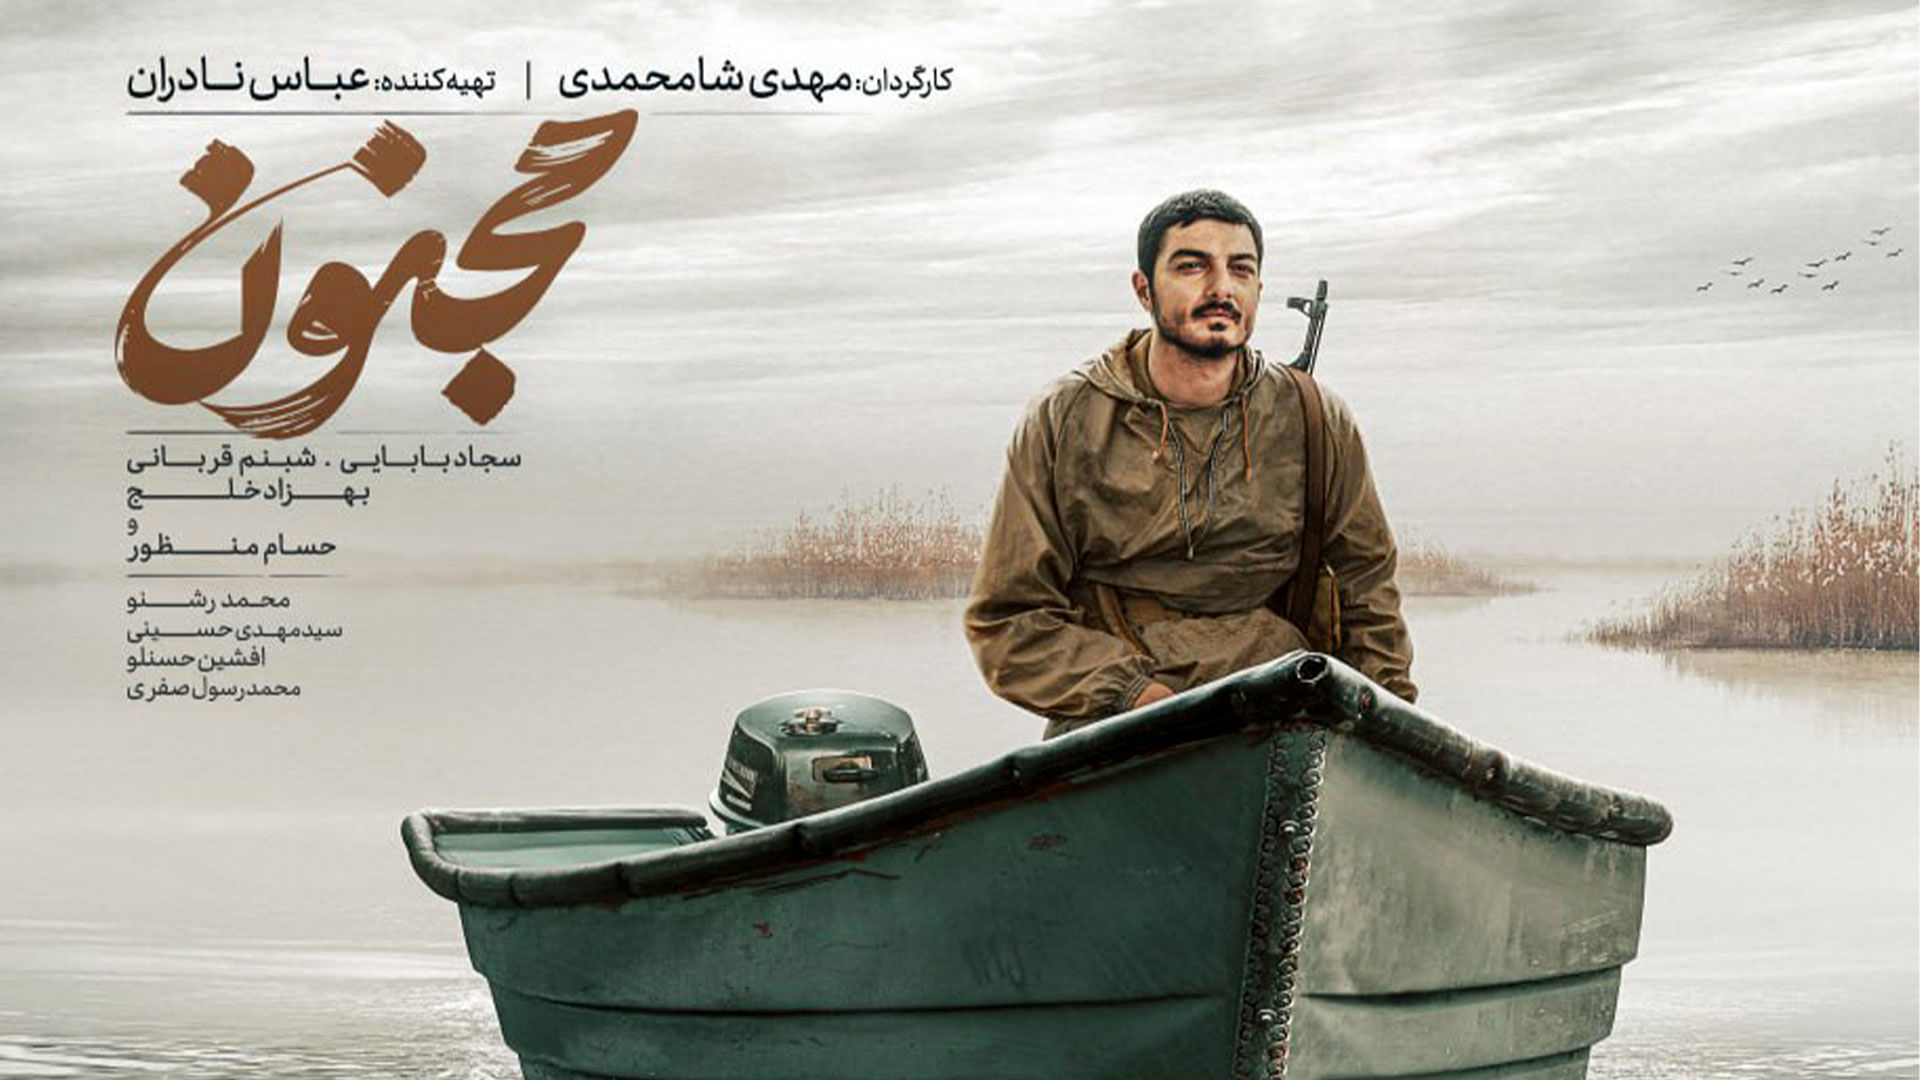 اعلام نامزدهای جشنواره فیلم فجر/ نامزدی یک فیلم در 12 بخش